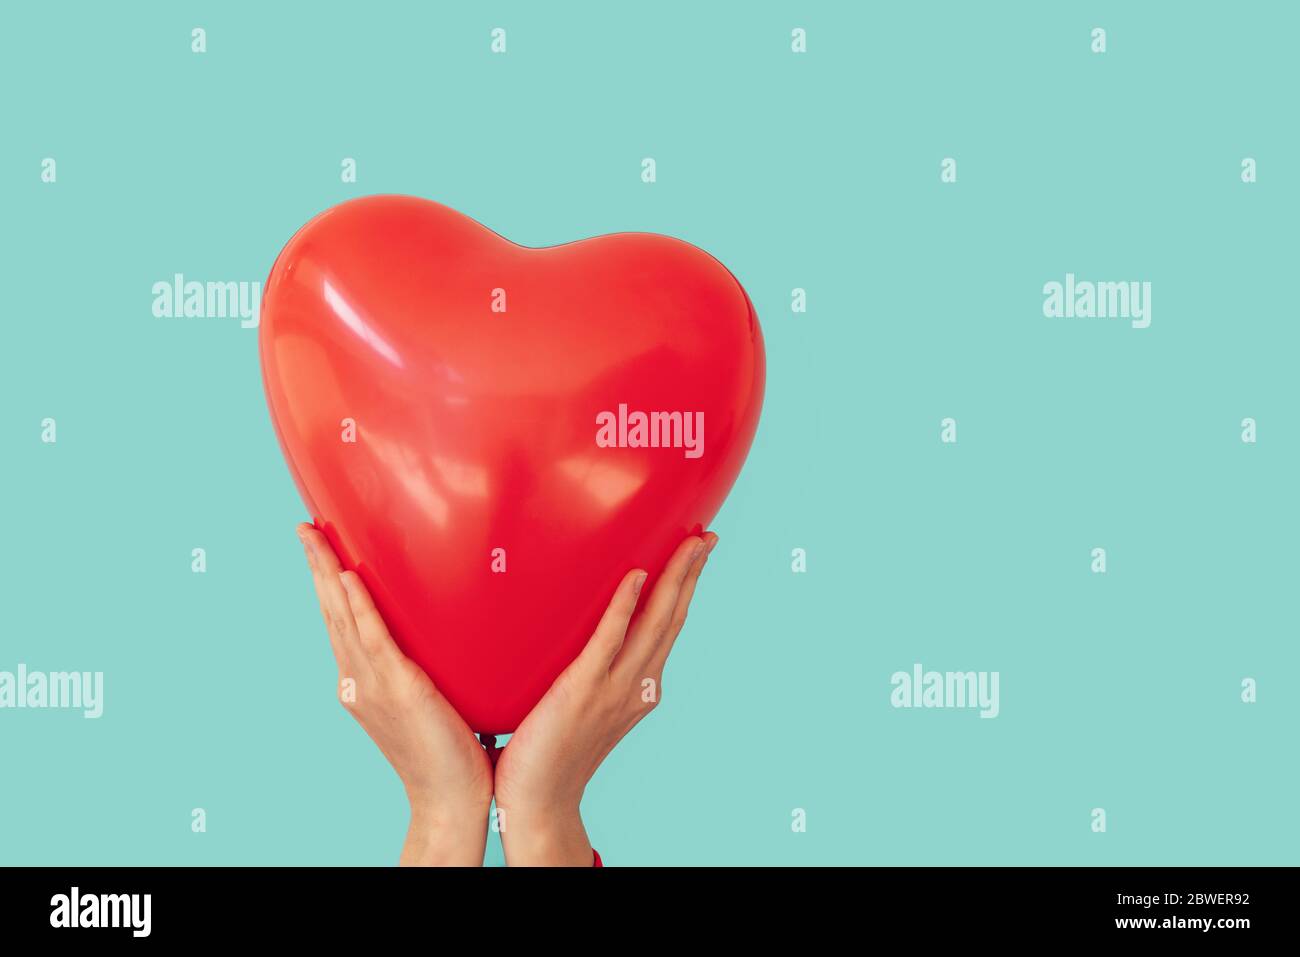 Frau hält roten Herz förmigen Ballon zu einem türkisfarbenen Wand Hintergrund. Valentinstag und Romantik Konzept Stockfoto